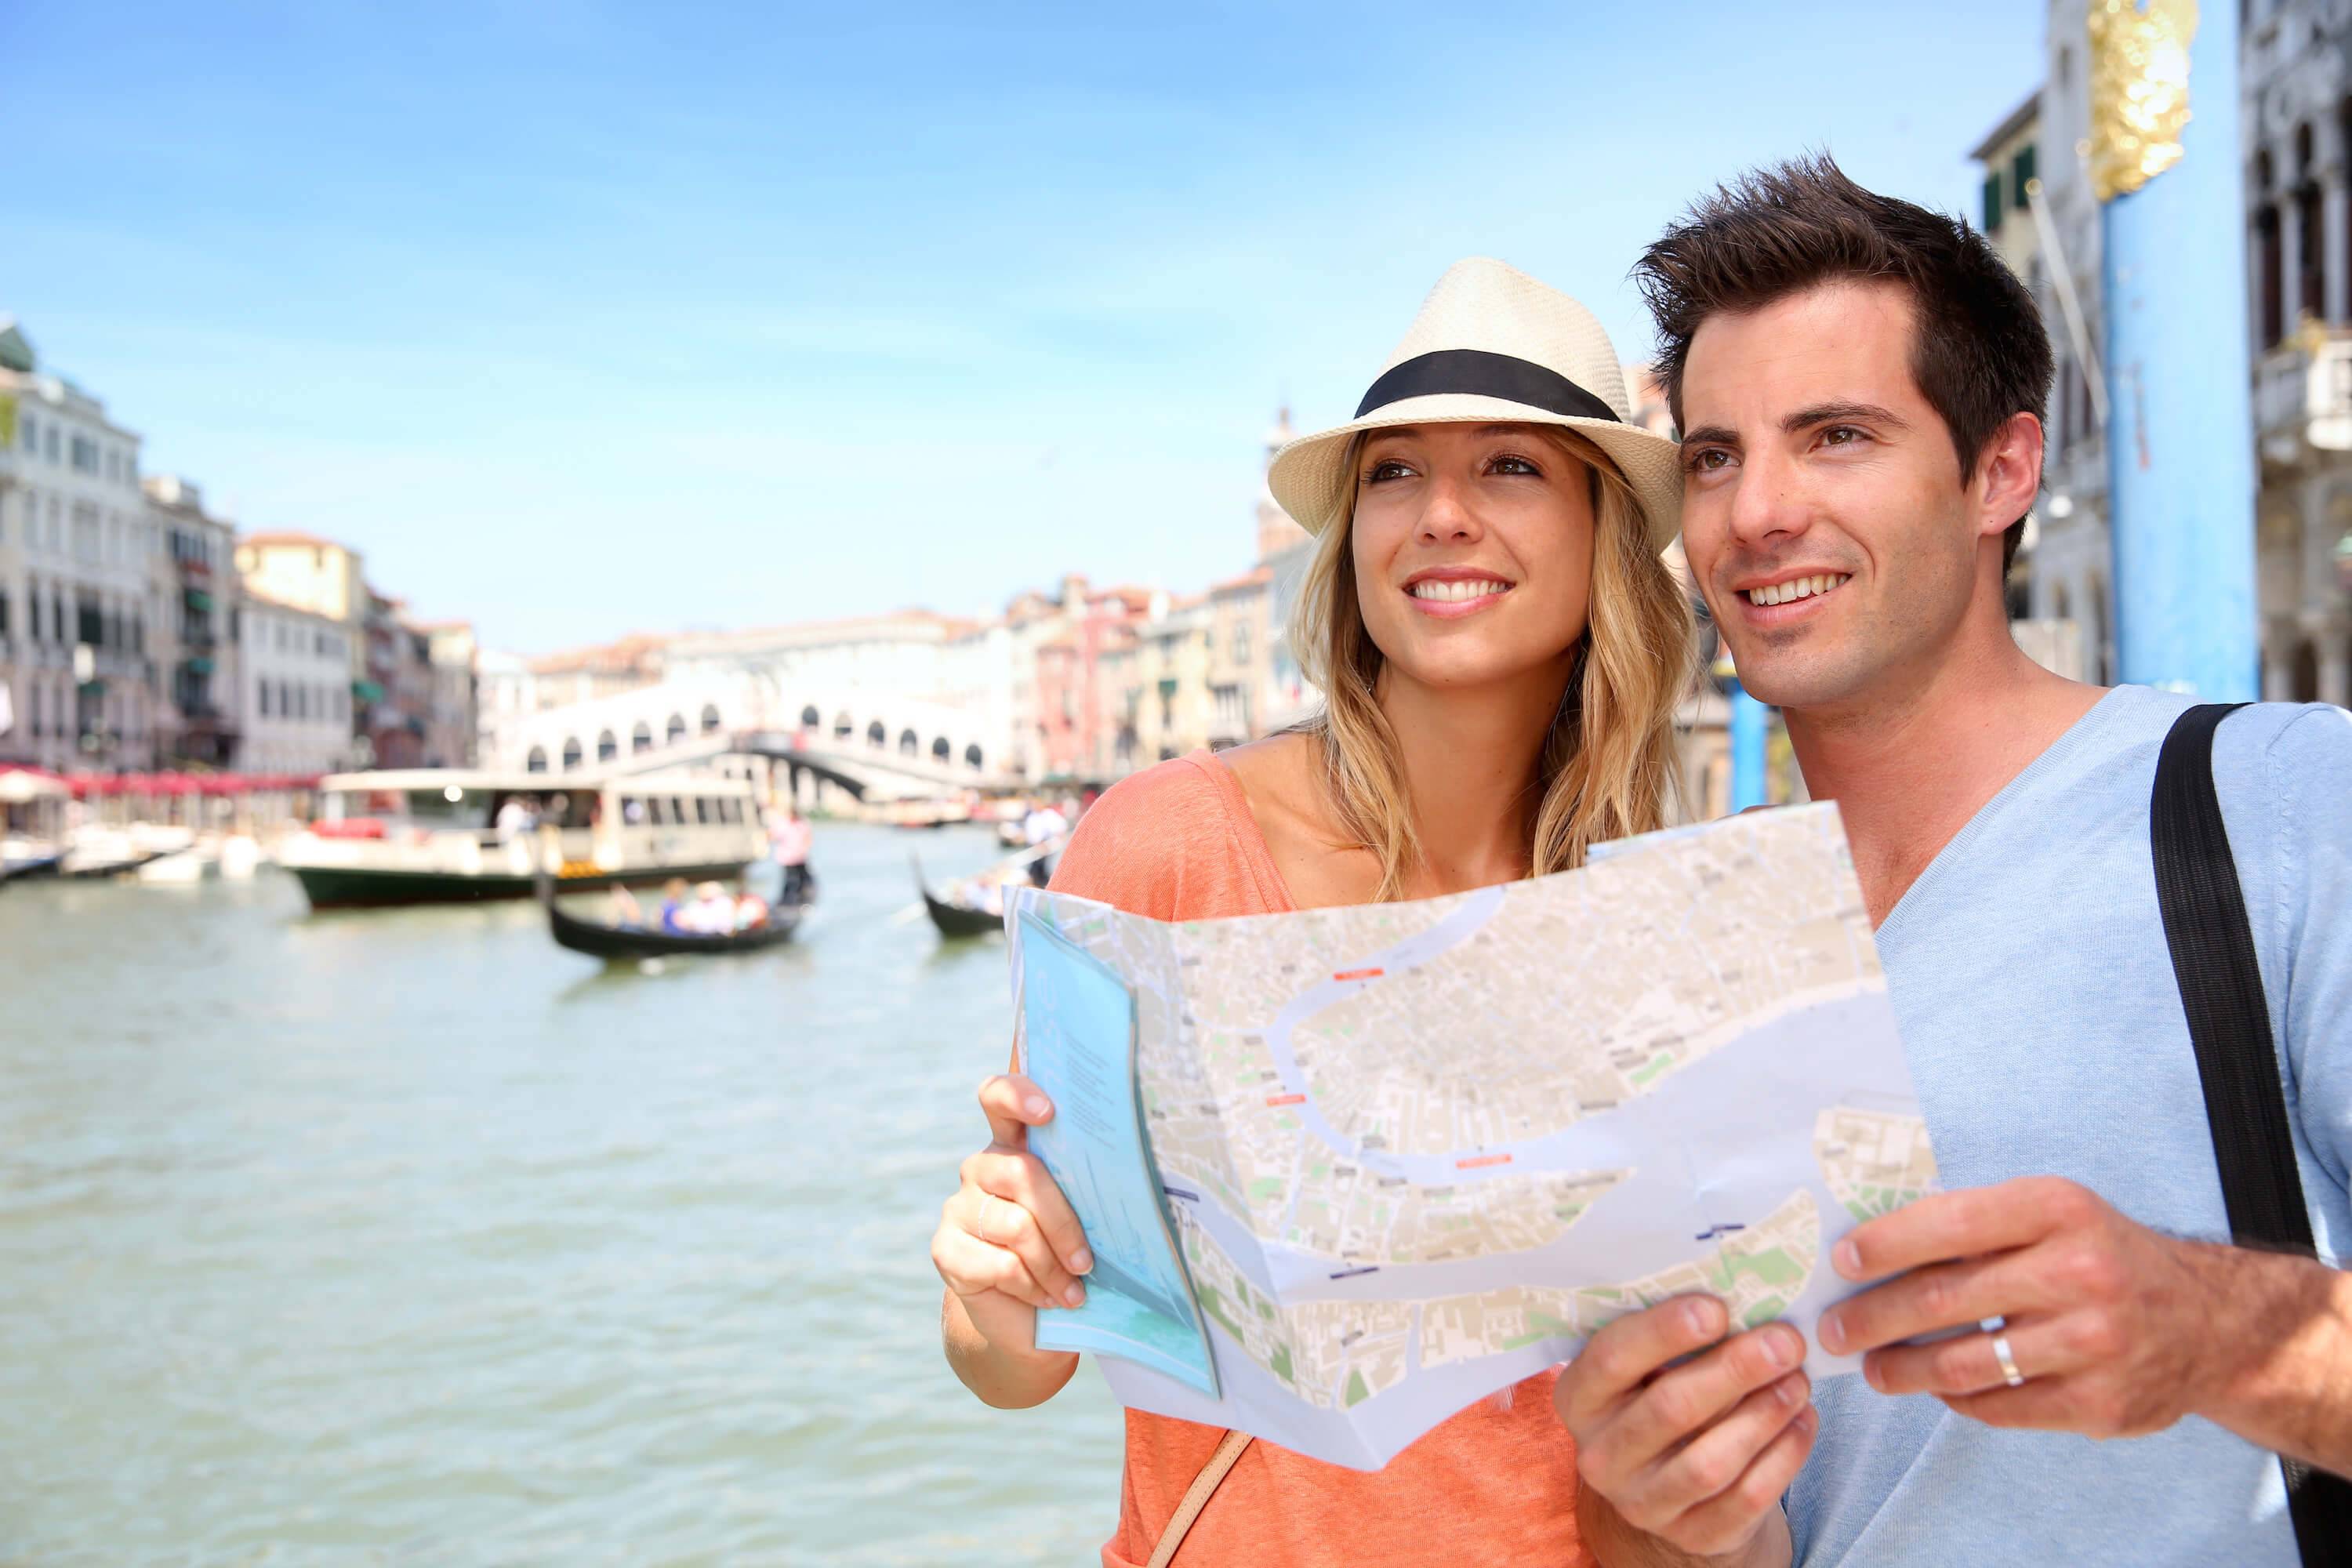 Недорогие туры за границу. Туристы в Европе. Счастливые люди путешествуют. Туризм за границей. Фотографии путешествий.